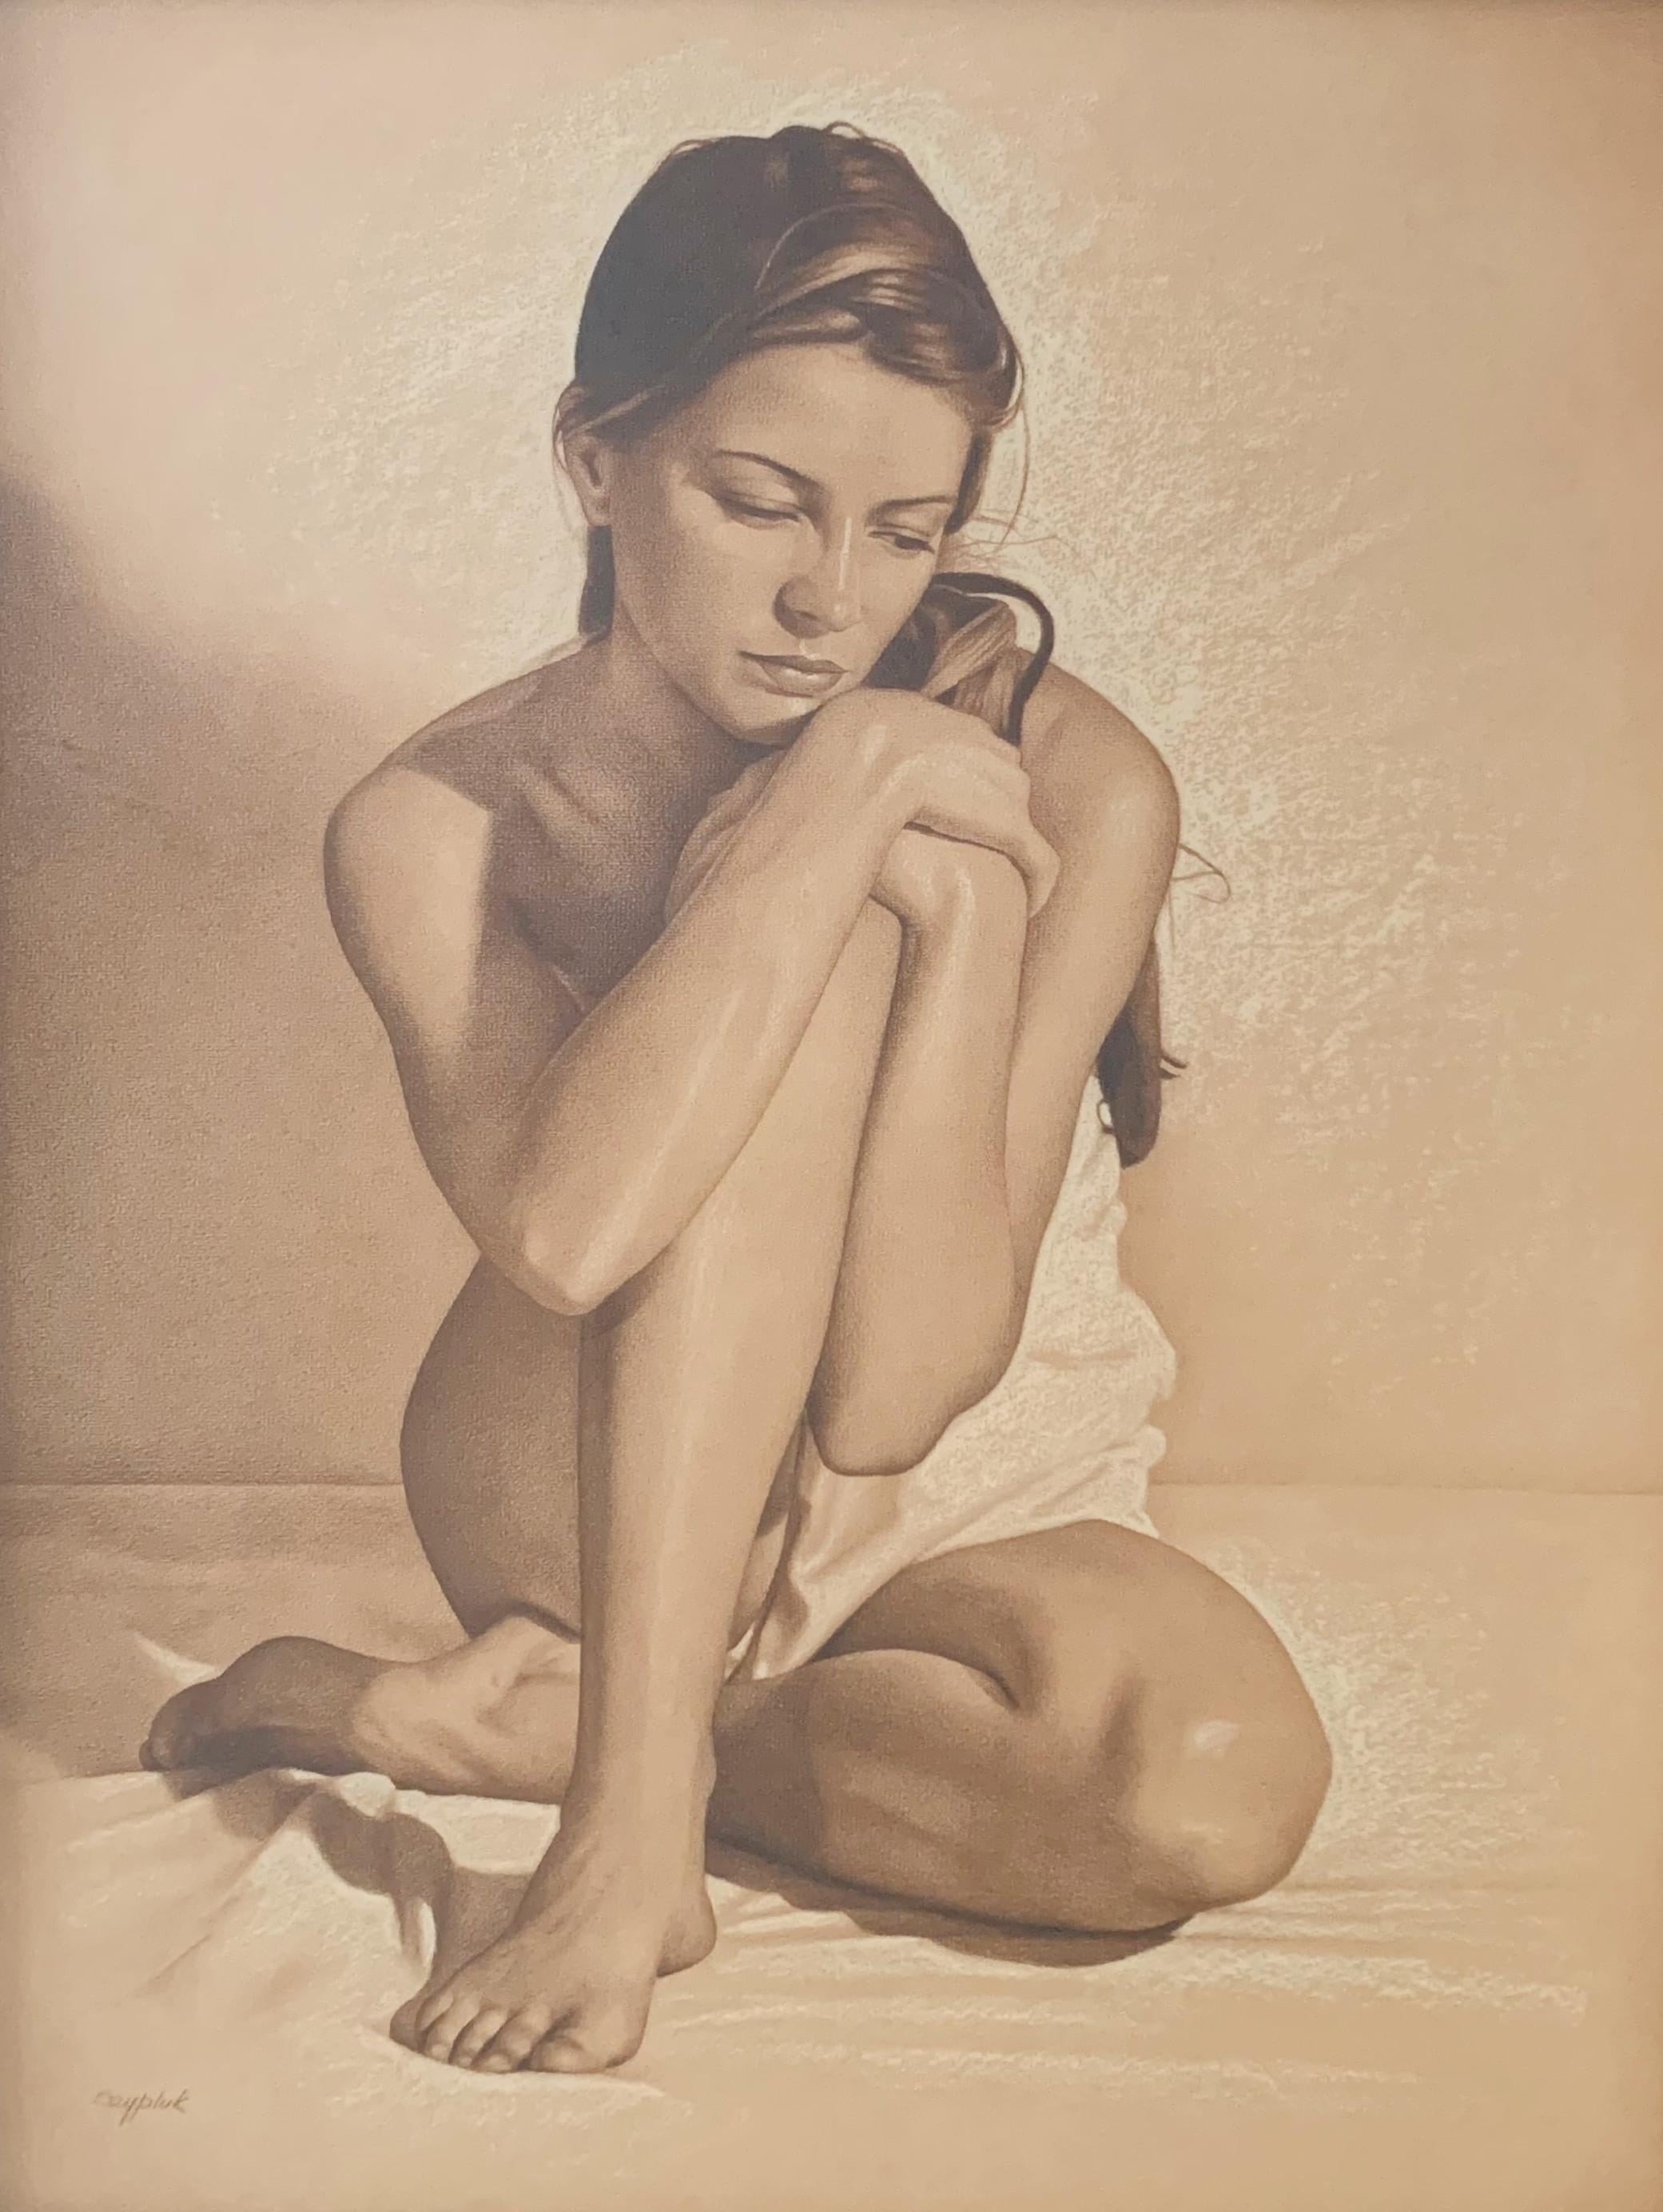 Nude Andrzej Szypluk - Nus. Contemporary Realistic Figurative Mixed Media Drawing (Dessin réaliste figuratif contemporain)  Artistics